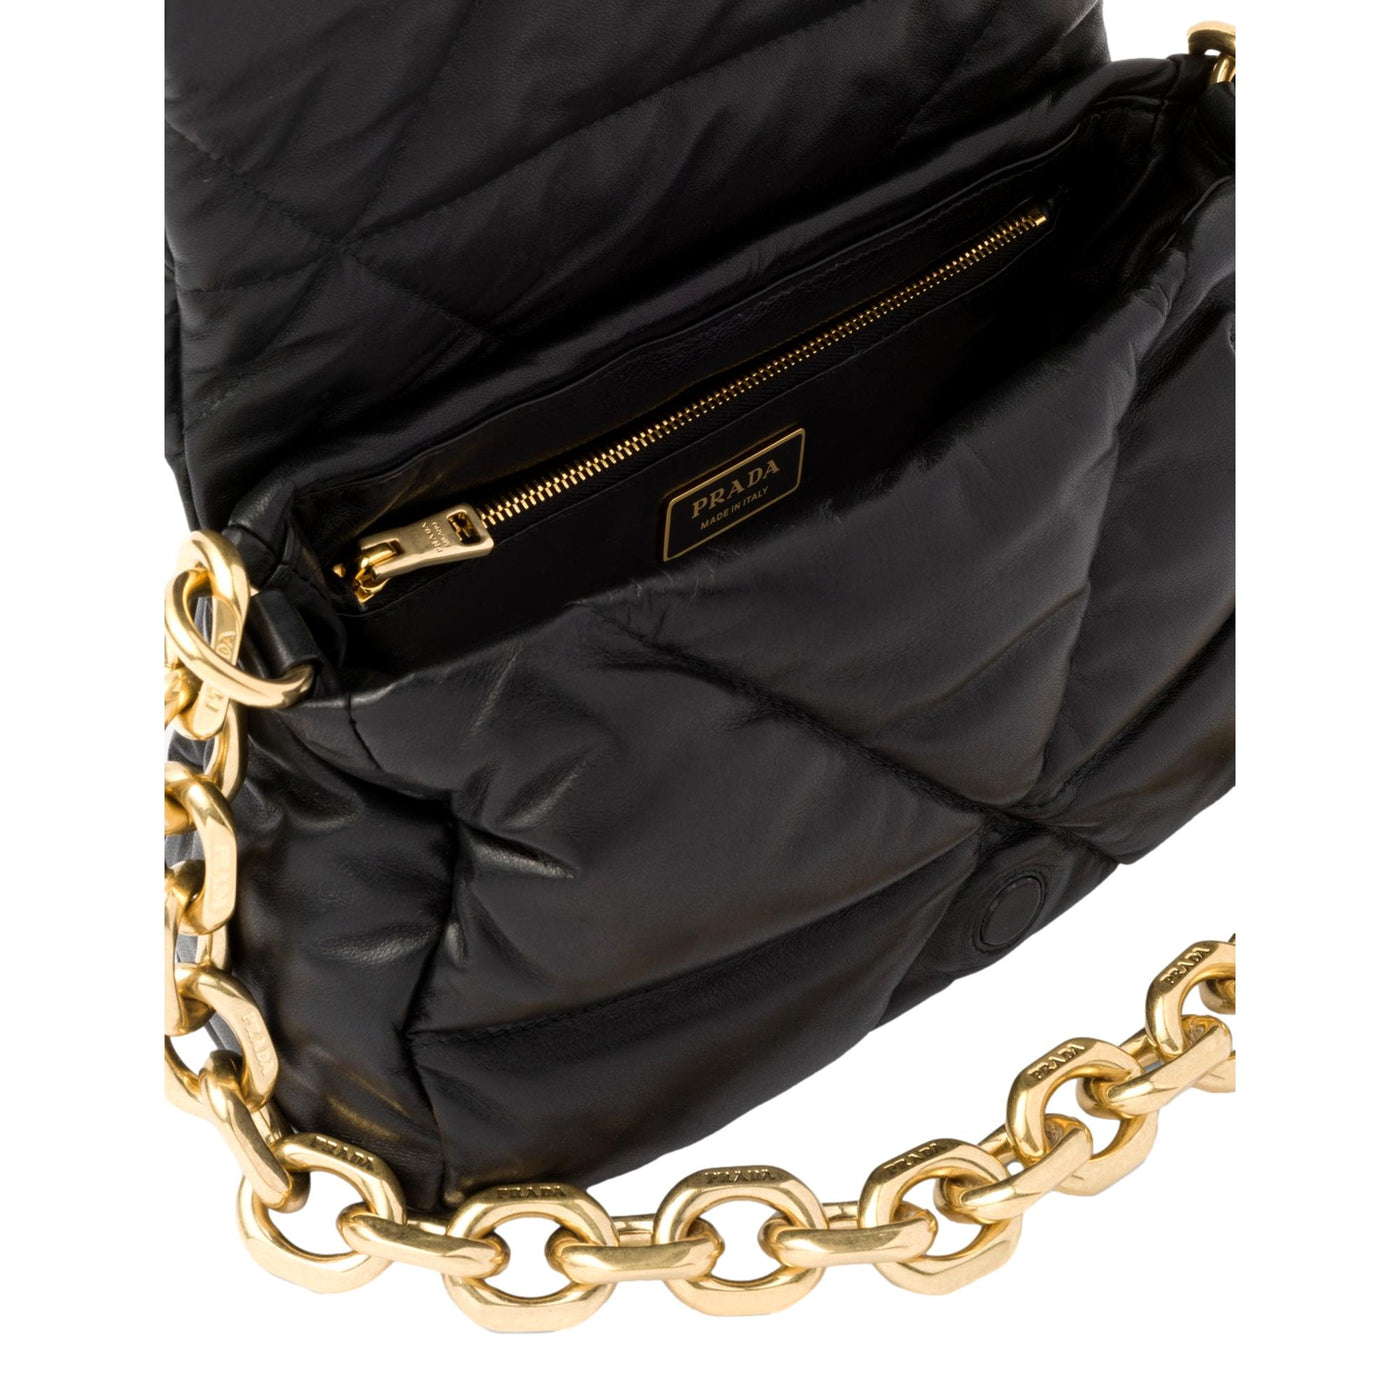 Prada Embossed Logo Black Quilted Soft Nappa Leather Shoulder Bag - LUXURYMRKT